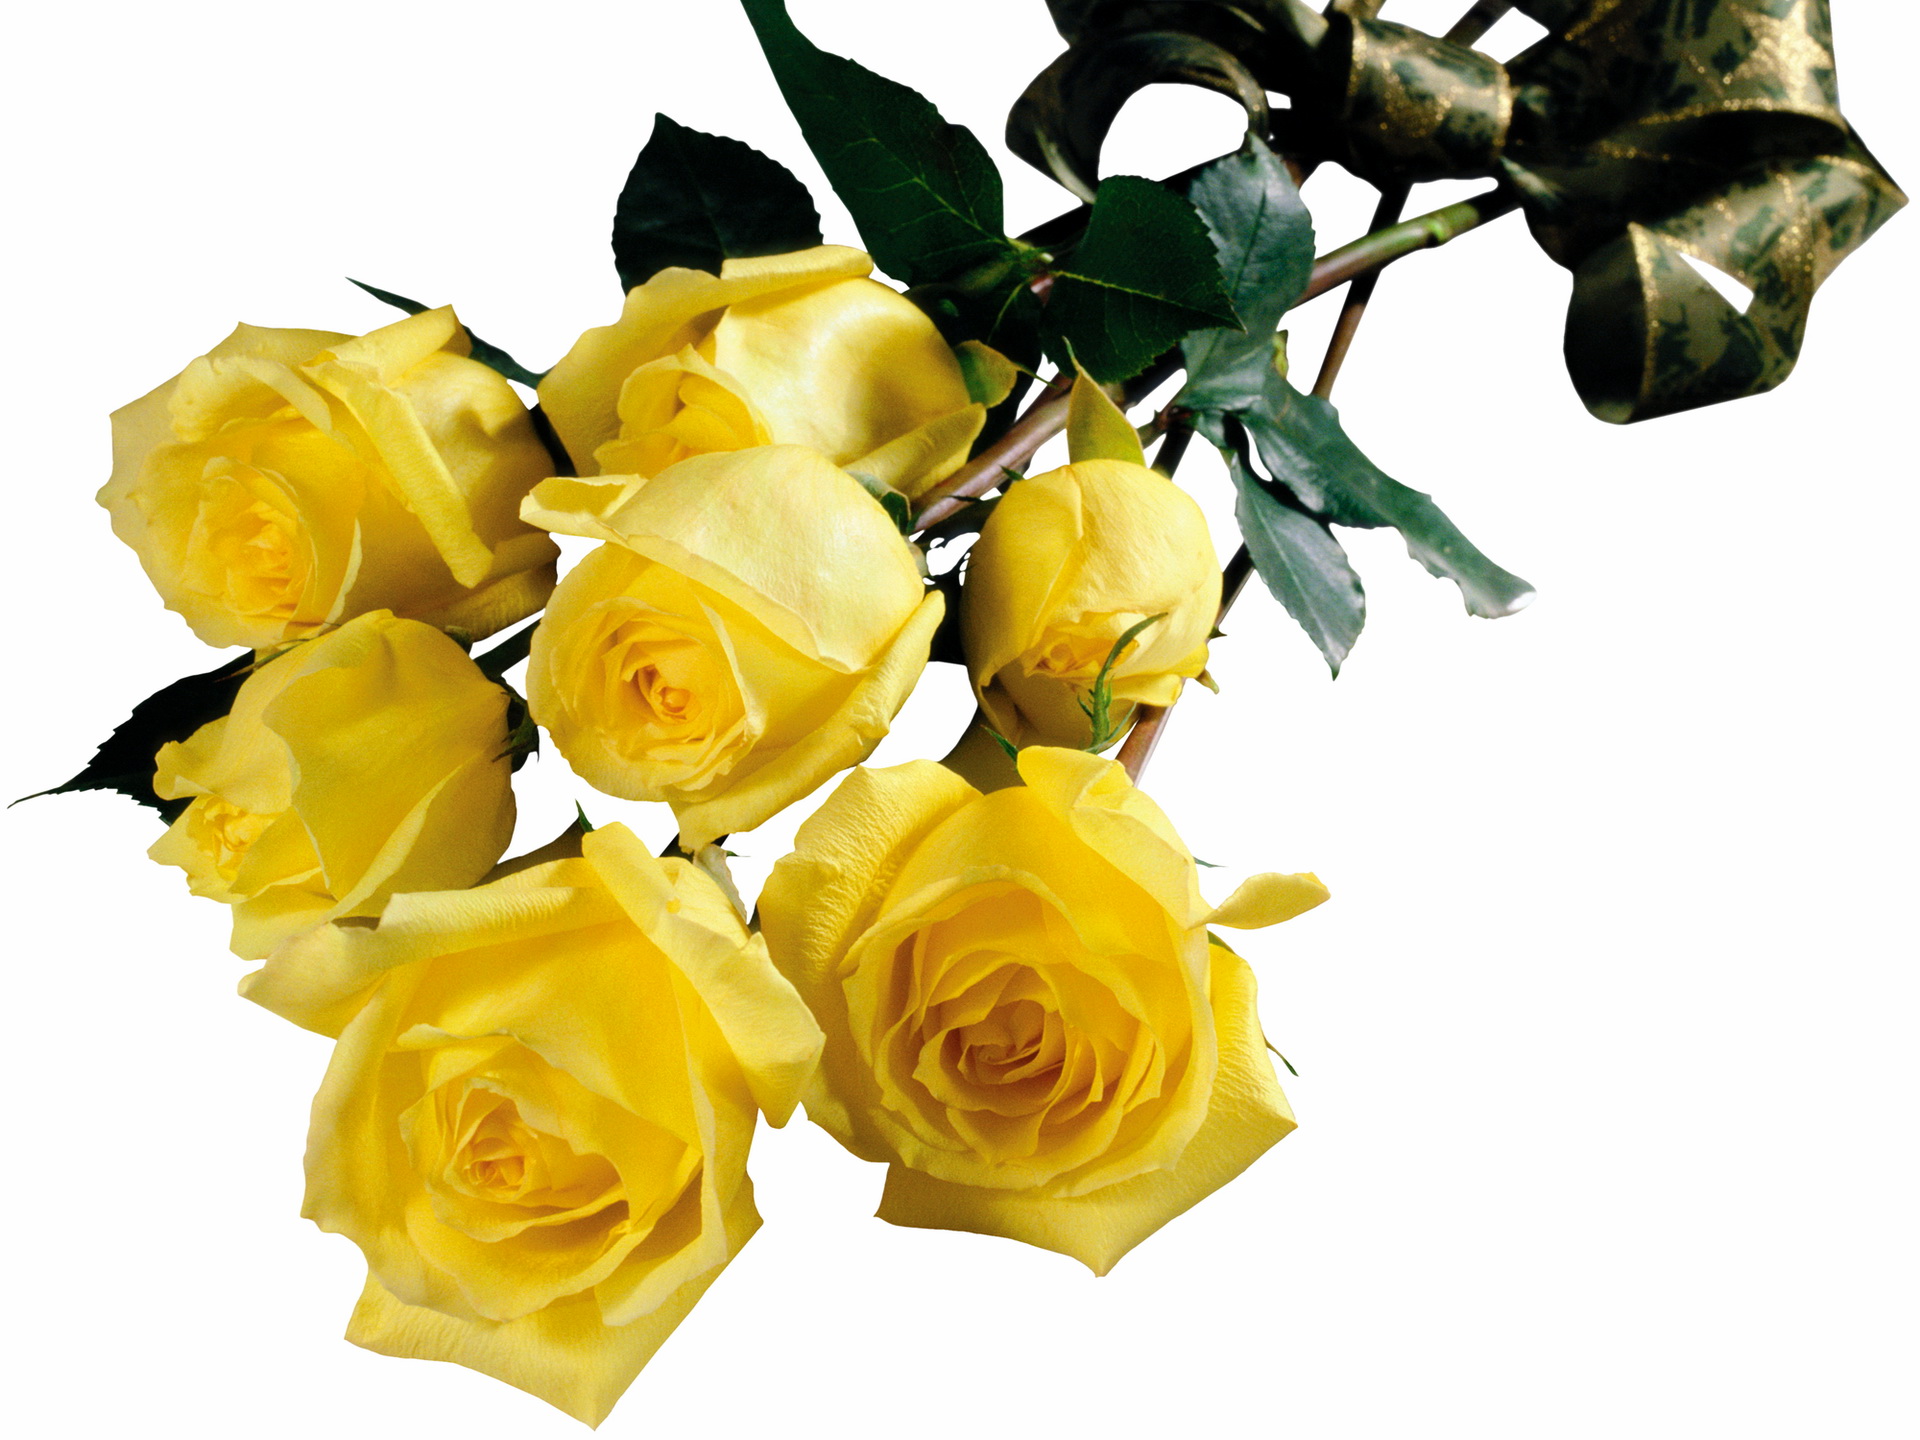 Желтые розы на прозрачном фоне